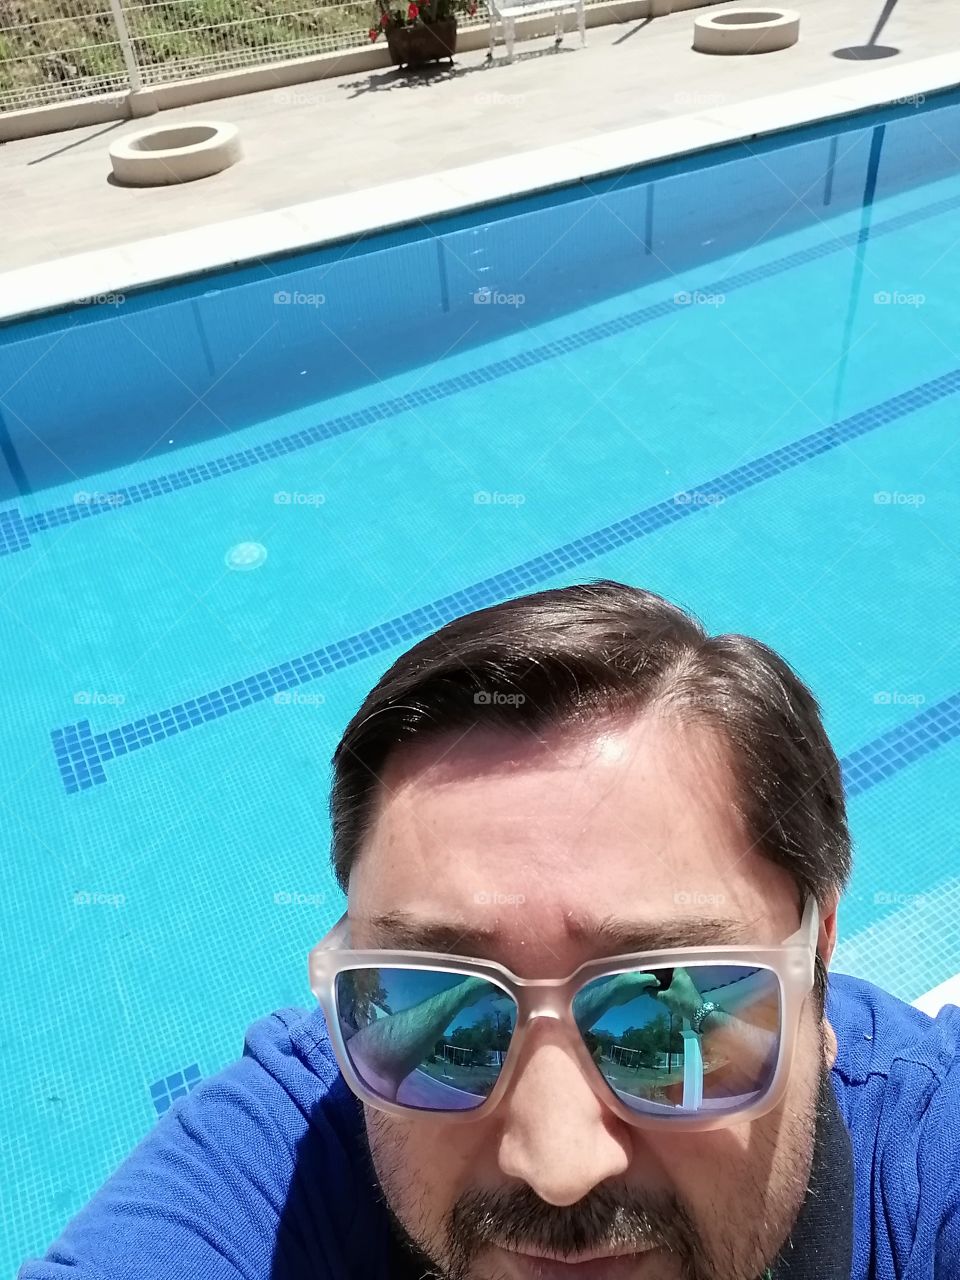 Selfie pool